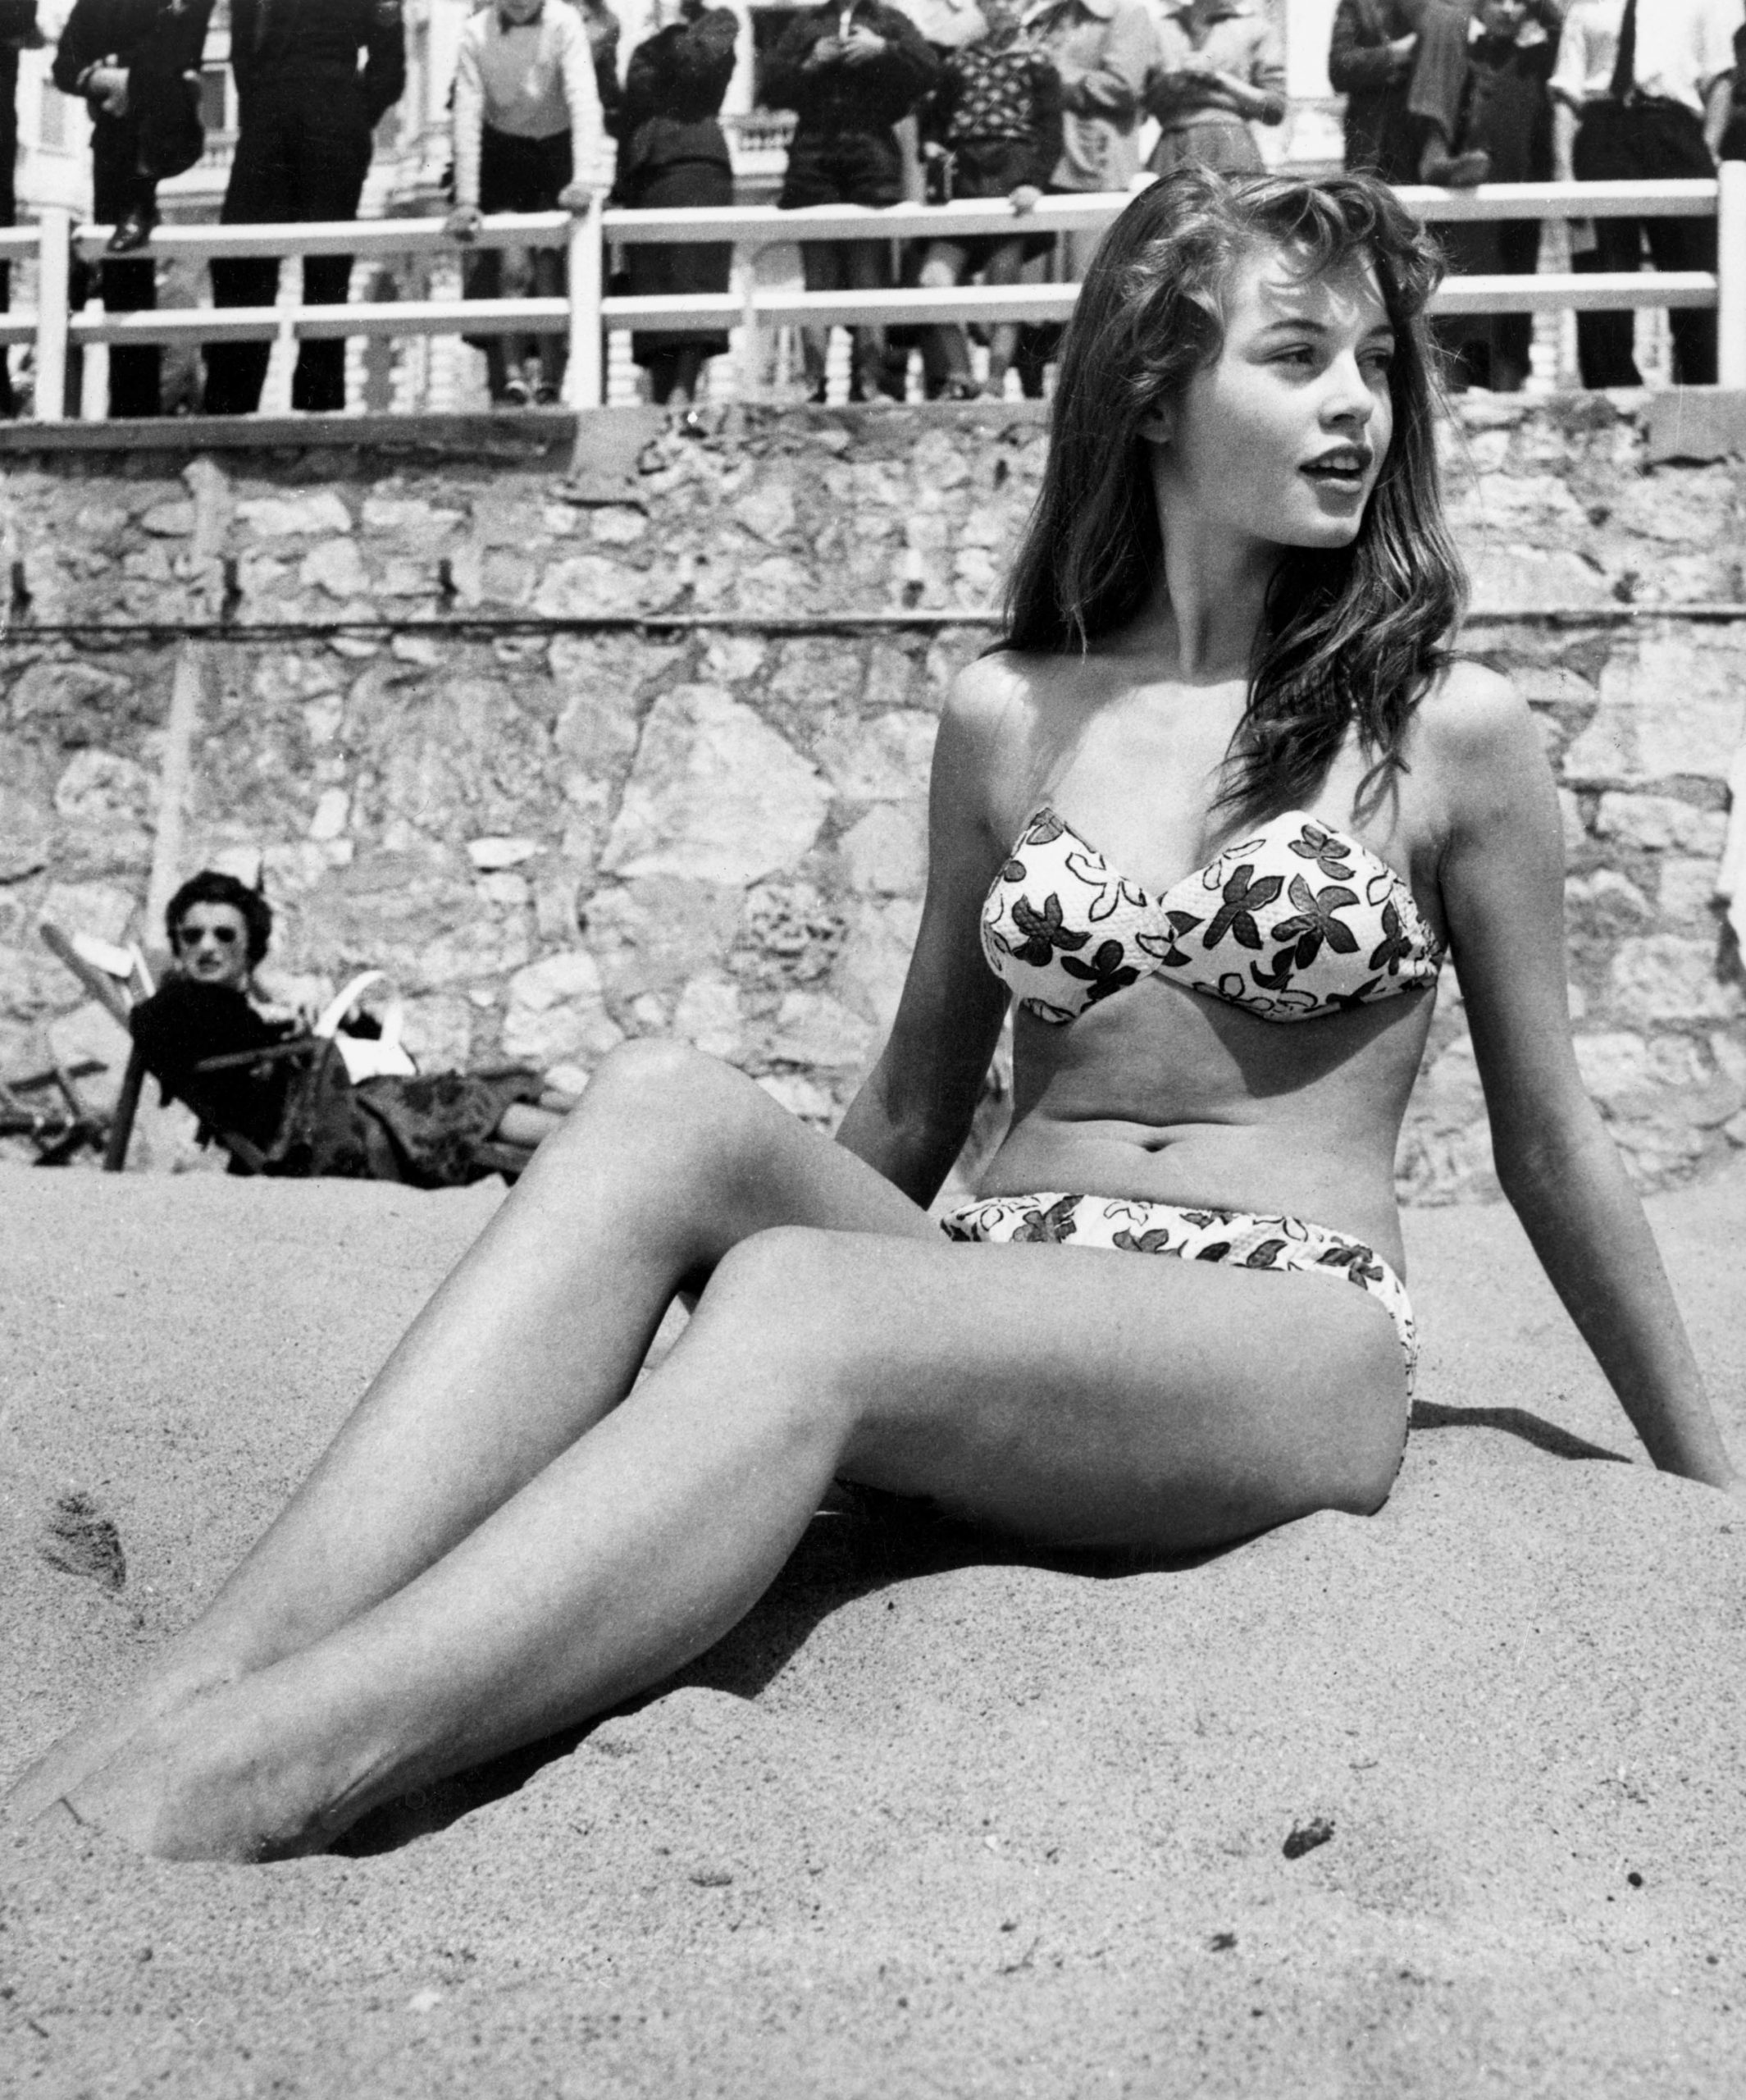 בריז'יט בארדו בביקיני על חוף הים בפסטיבל קאן, 1953 (צילום: ויקיפדיה)